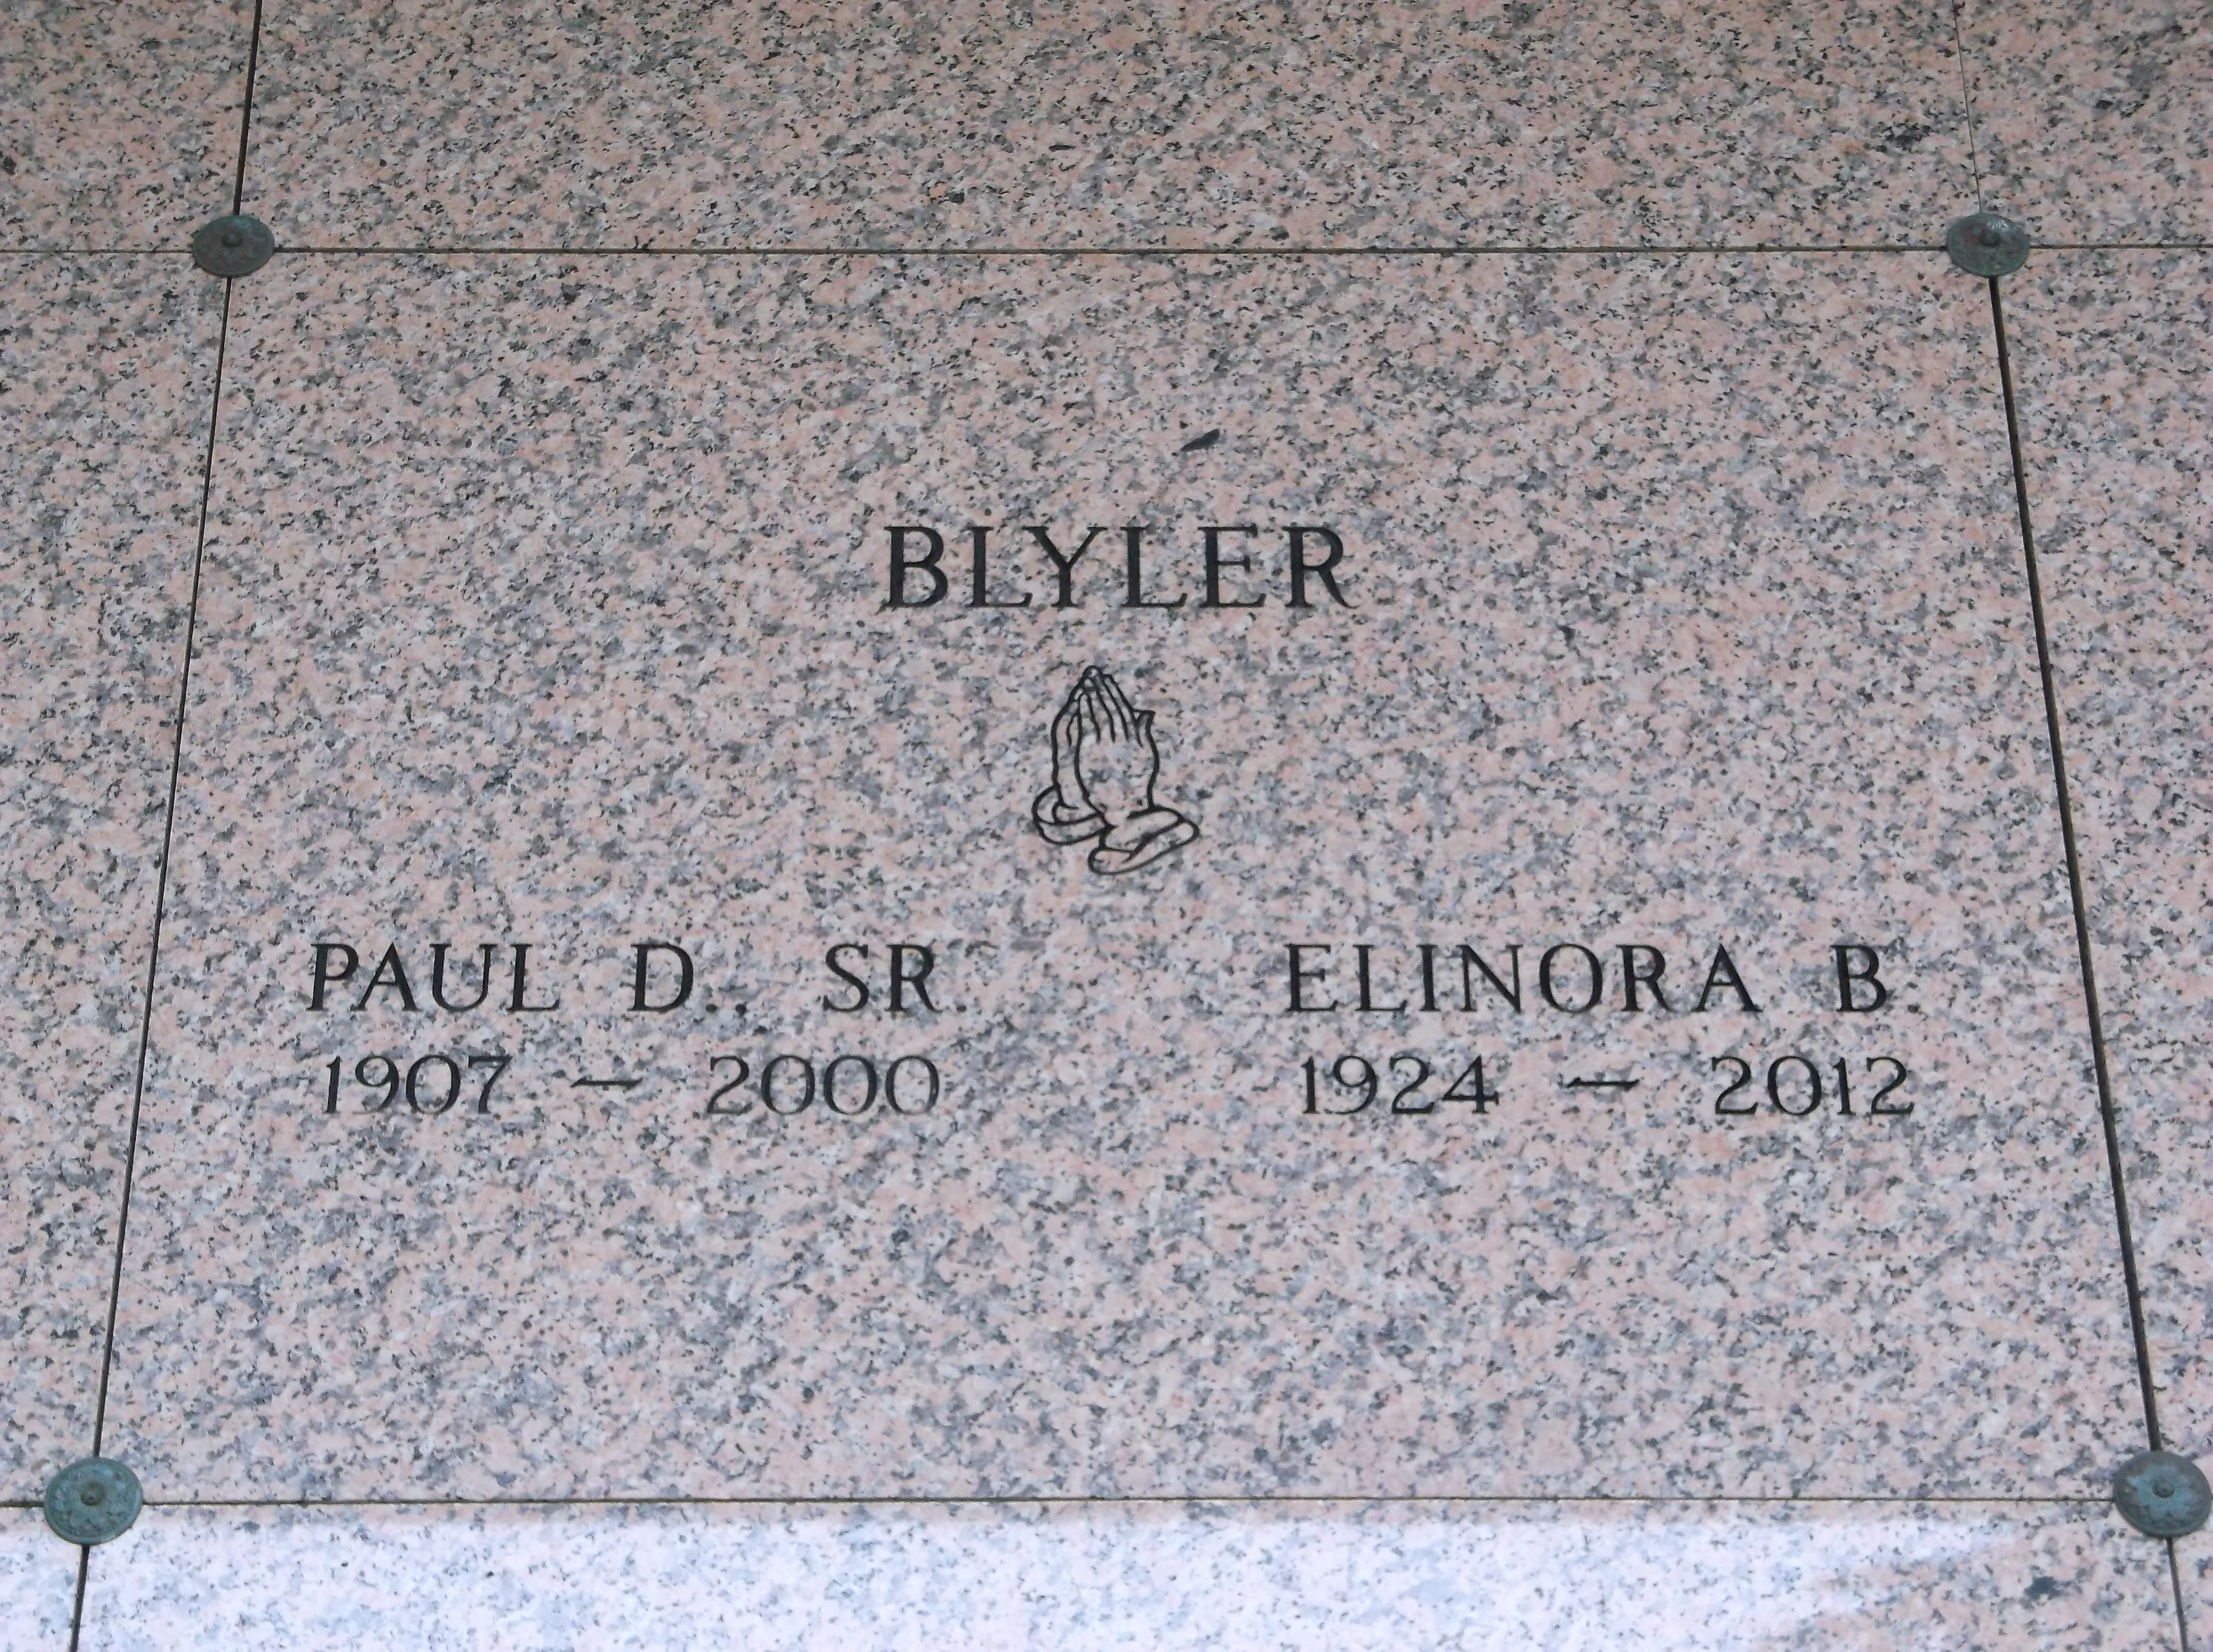 Paul D Blyler, Sr